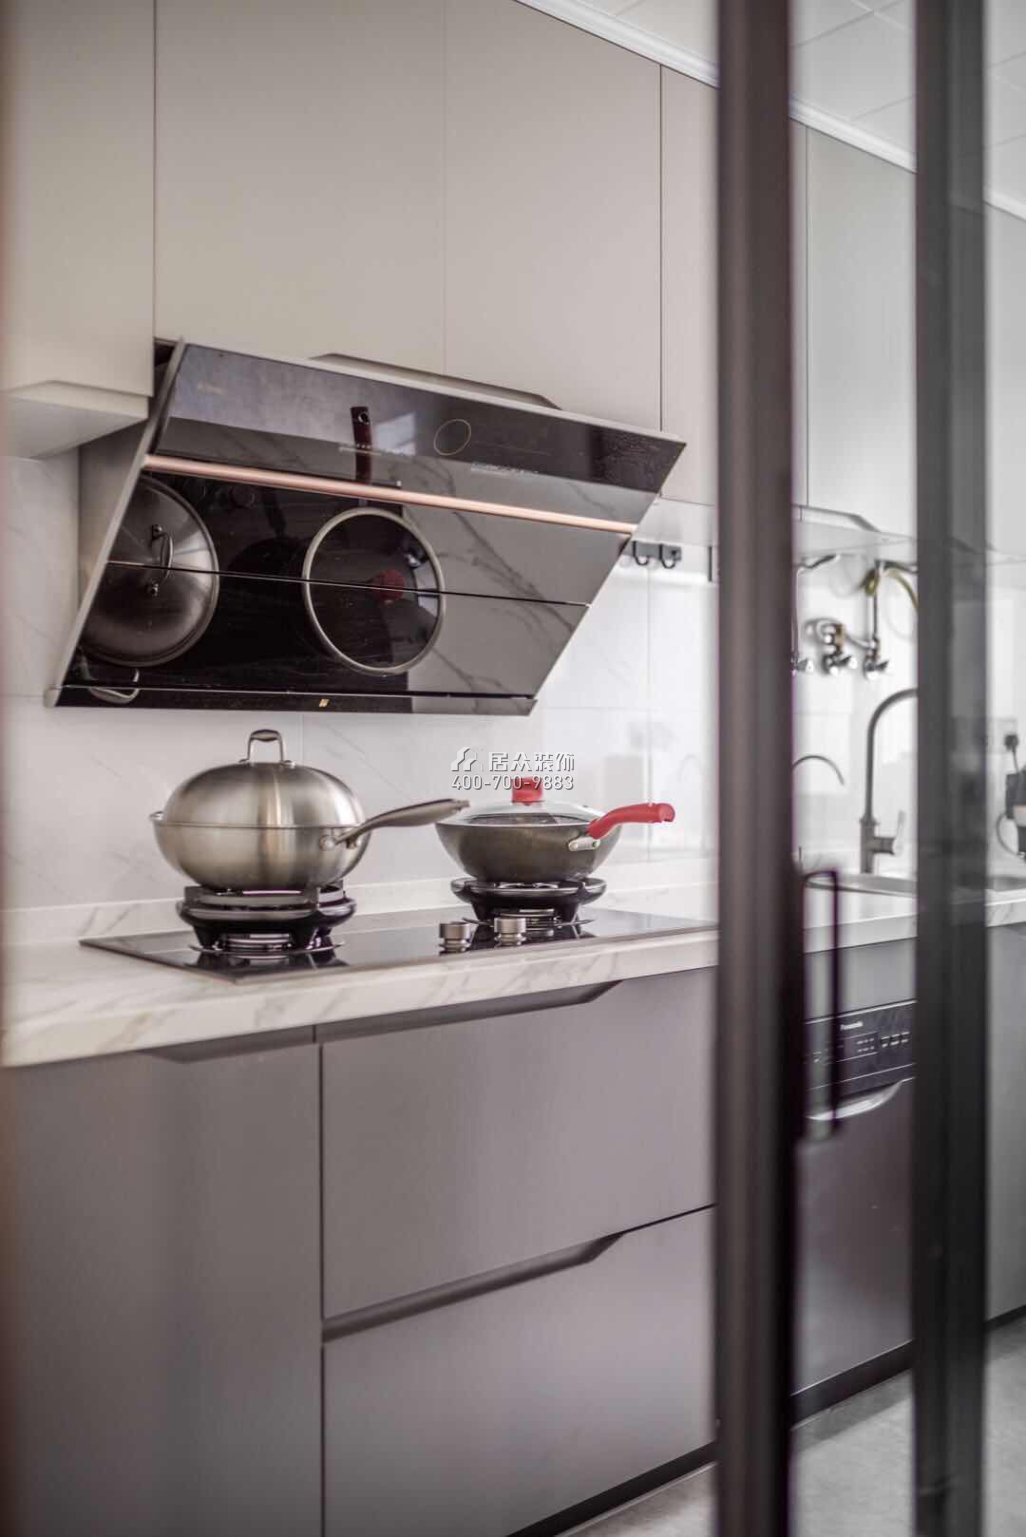 科苑學里110平方米現代簡約風格平層戶型廚房裝修效果圖